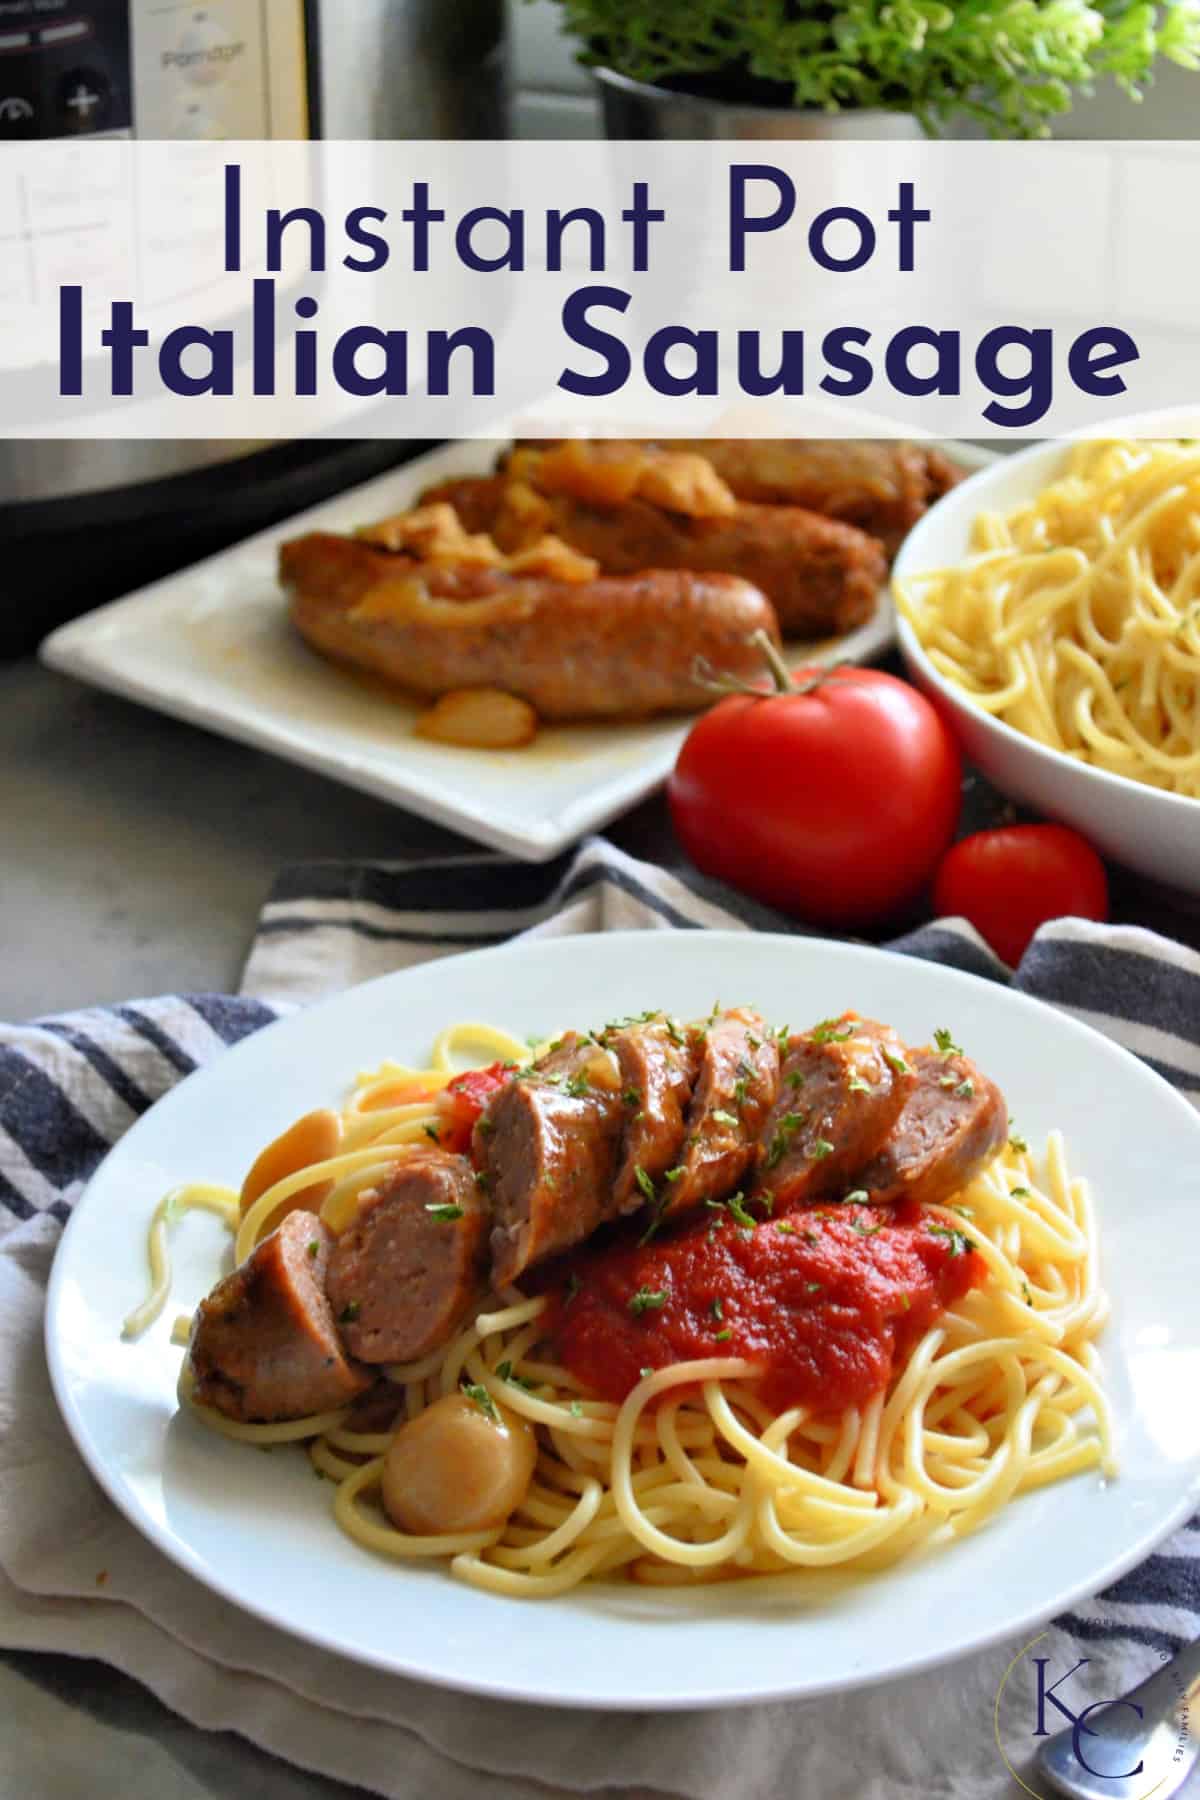  Galvanizált spagetti marinarával, fűszernövényekkel és szeletelt olasz kolbásszal, címszöveggel.